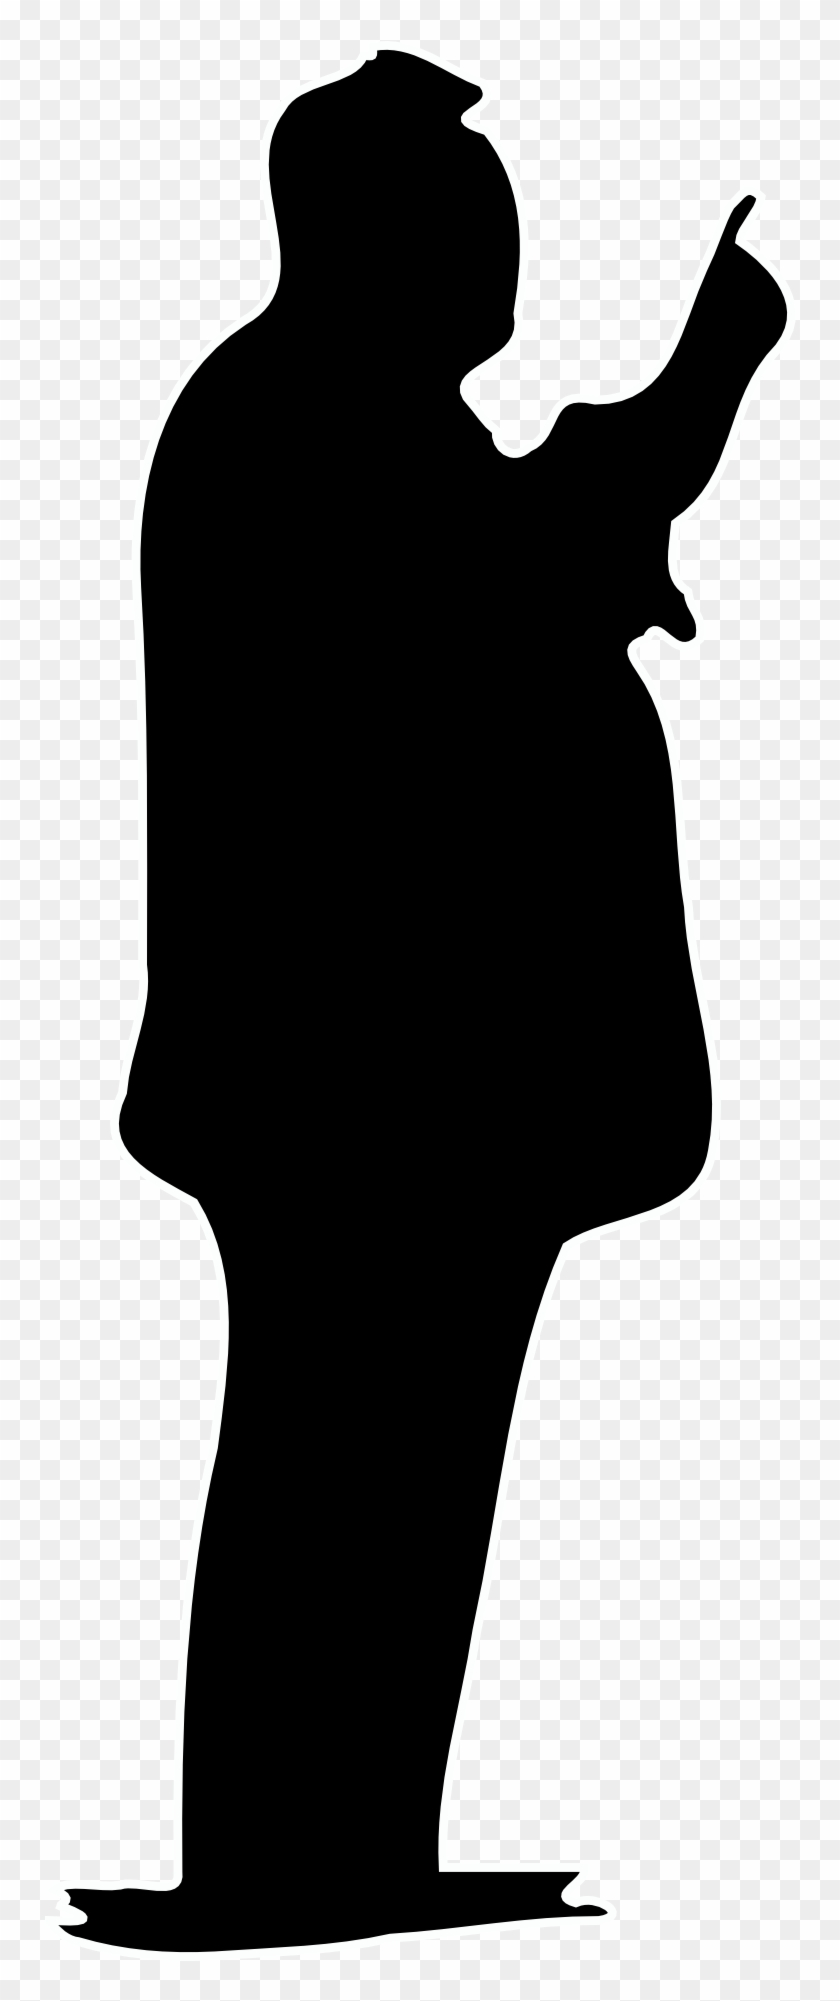 James Bond Silhouette Clip Art - Male Secret Agent Silhouette #144433